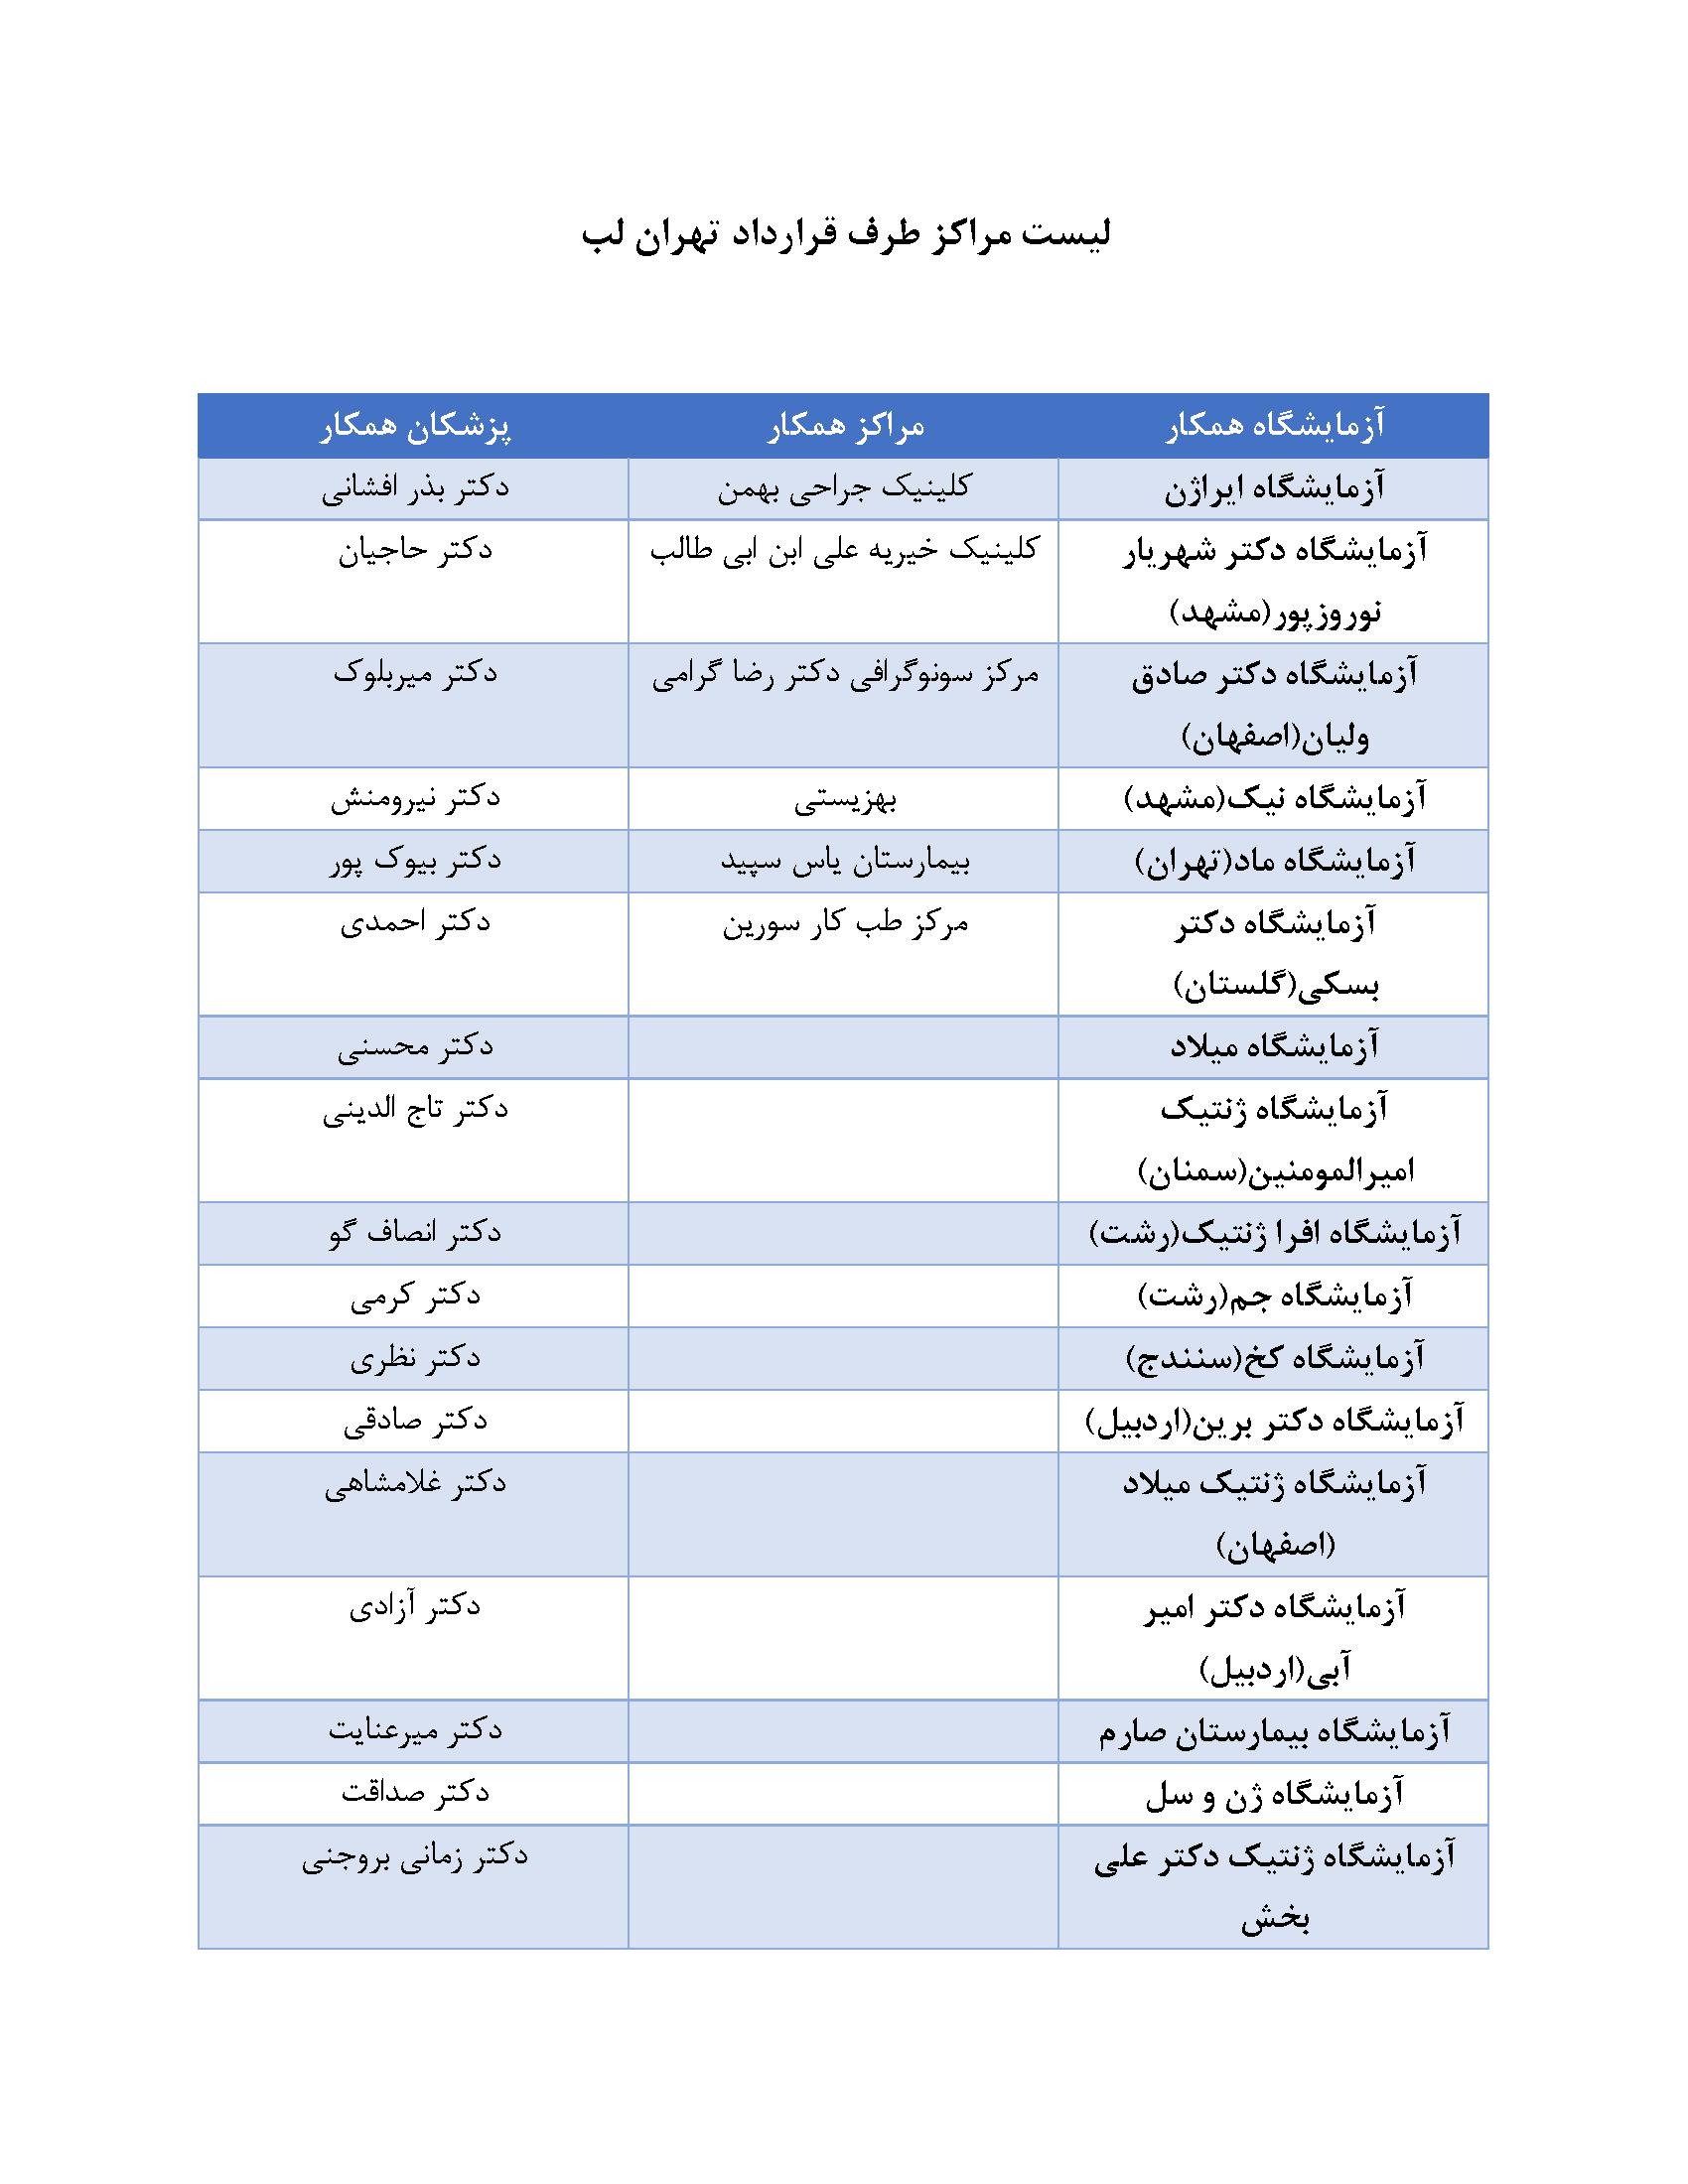 لیست مراکز همکار با آزمایشگاه تهران لب